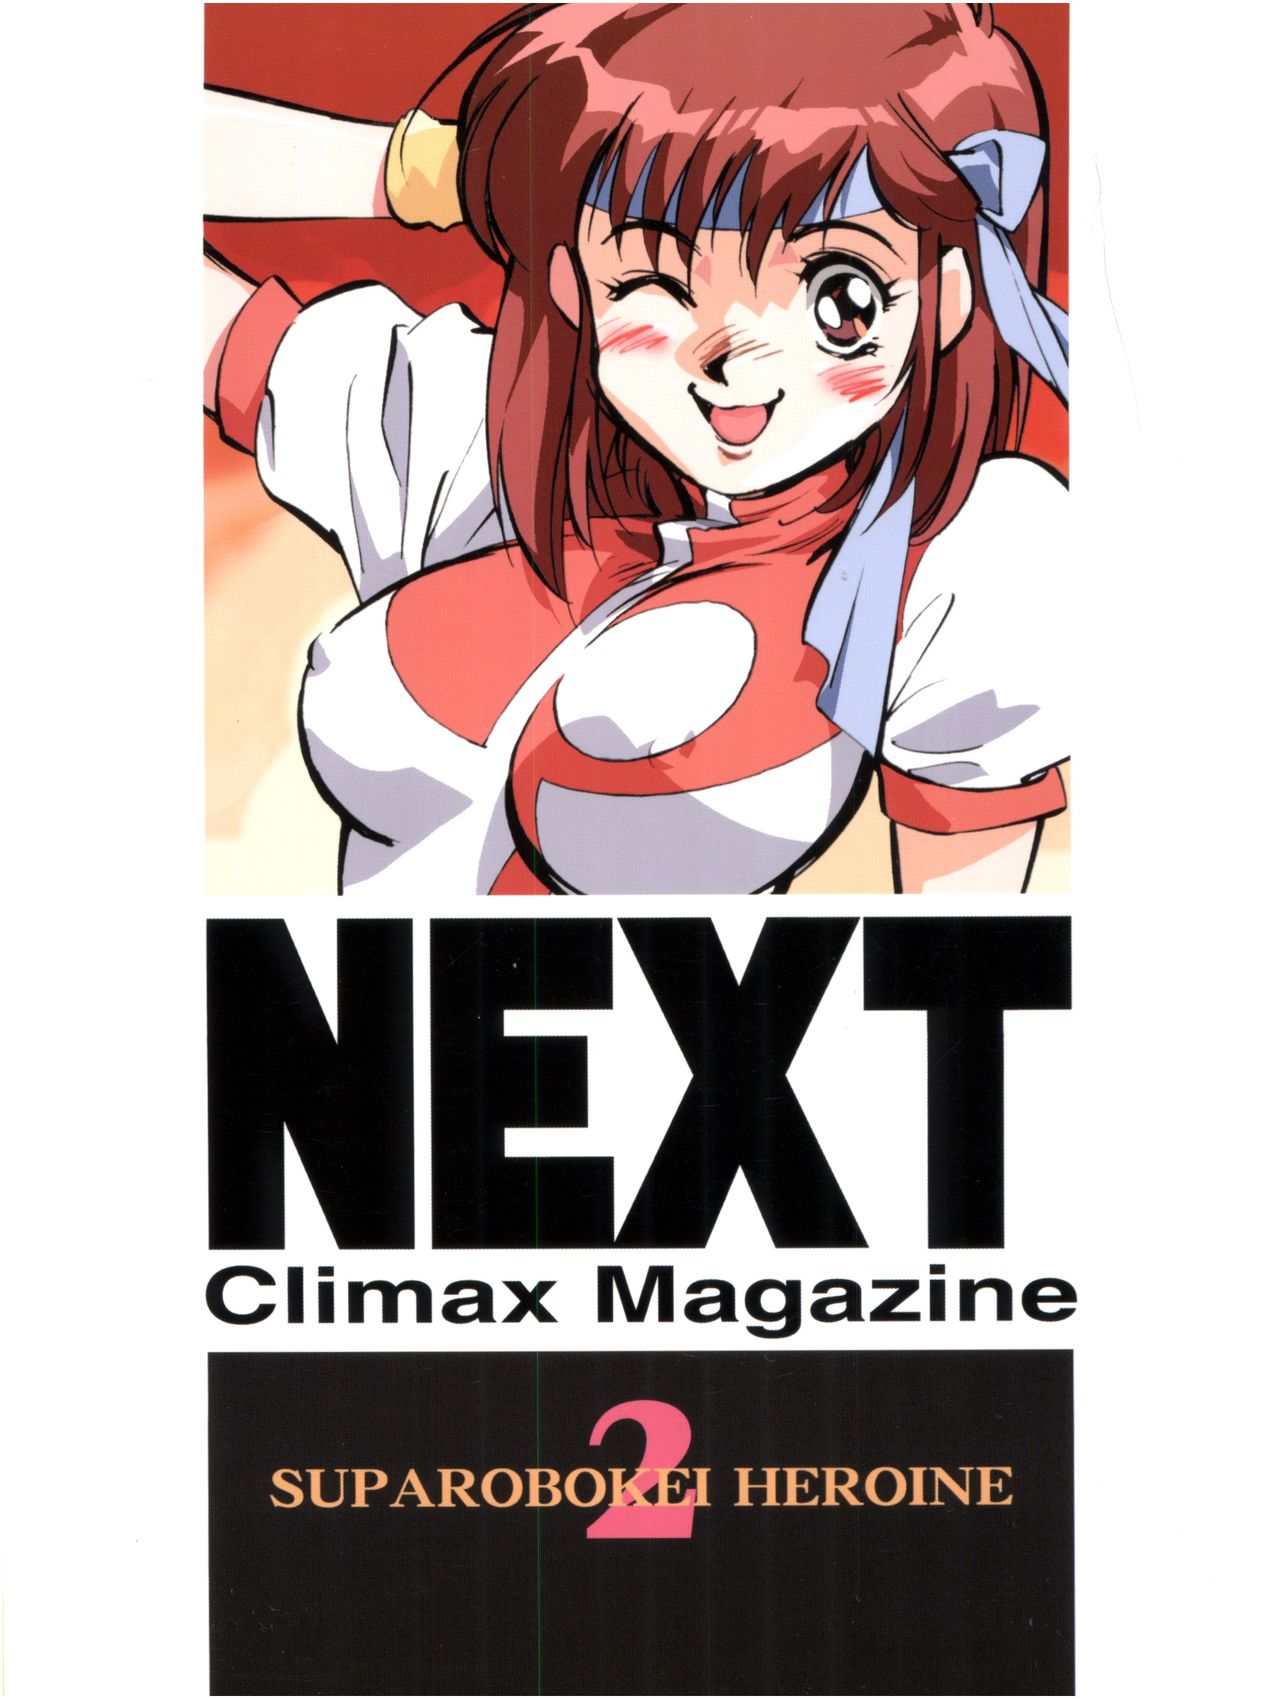 (サンクリ7) [おかちめんたいこ製作室 (よろず)] NEXT Climax Magazine 2 スパロボ系ヒロイン (よろず)